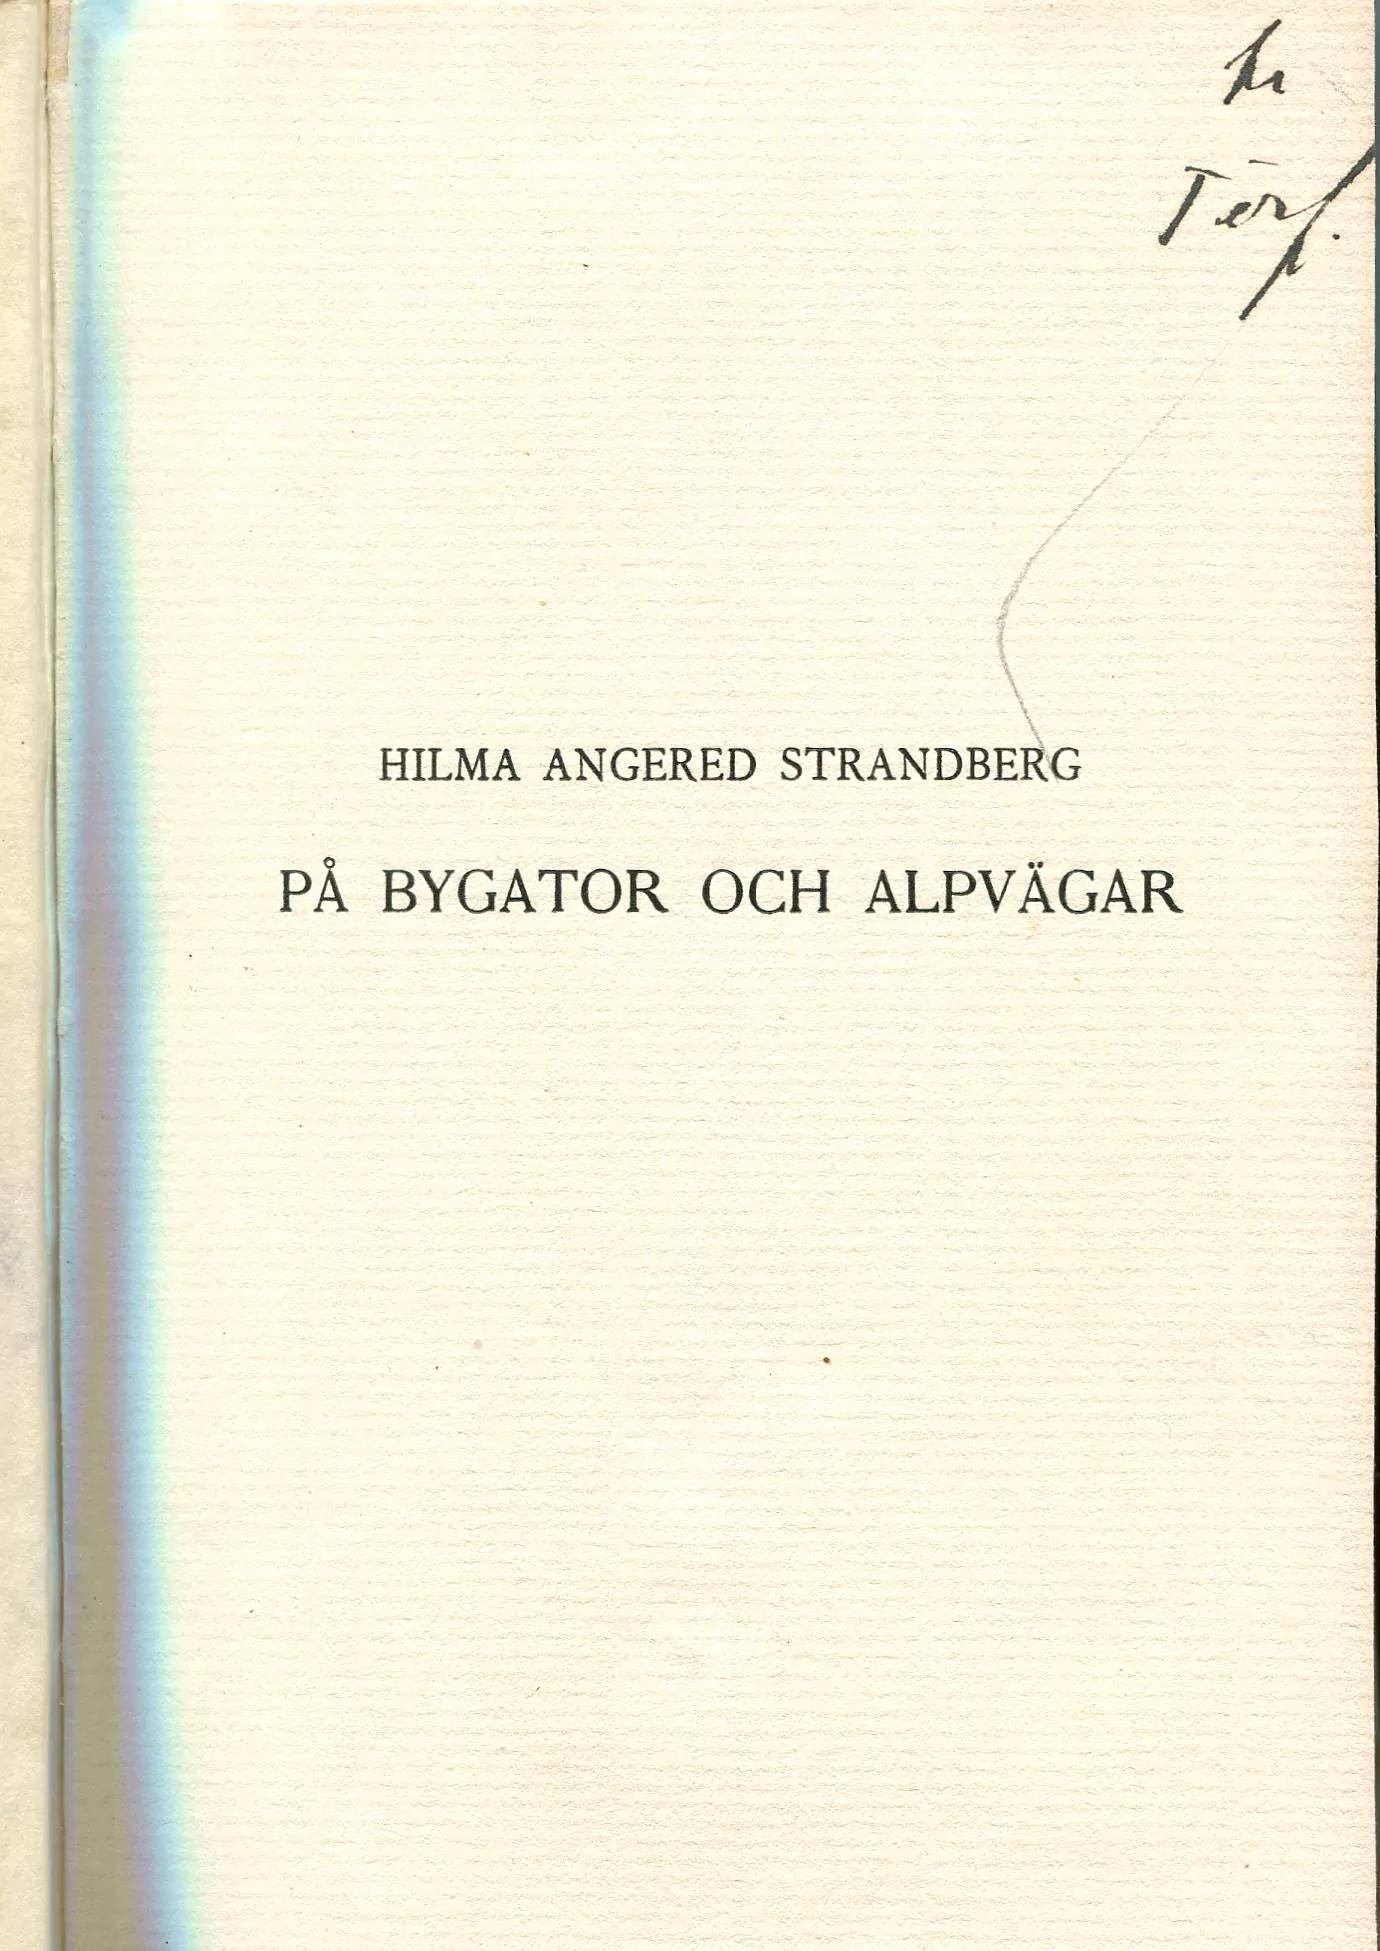 På bygator och alpvägar, Stockholm 1915